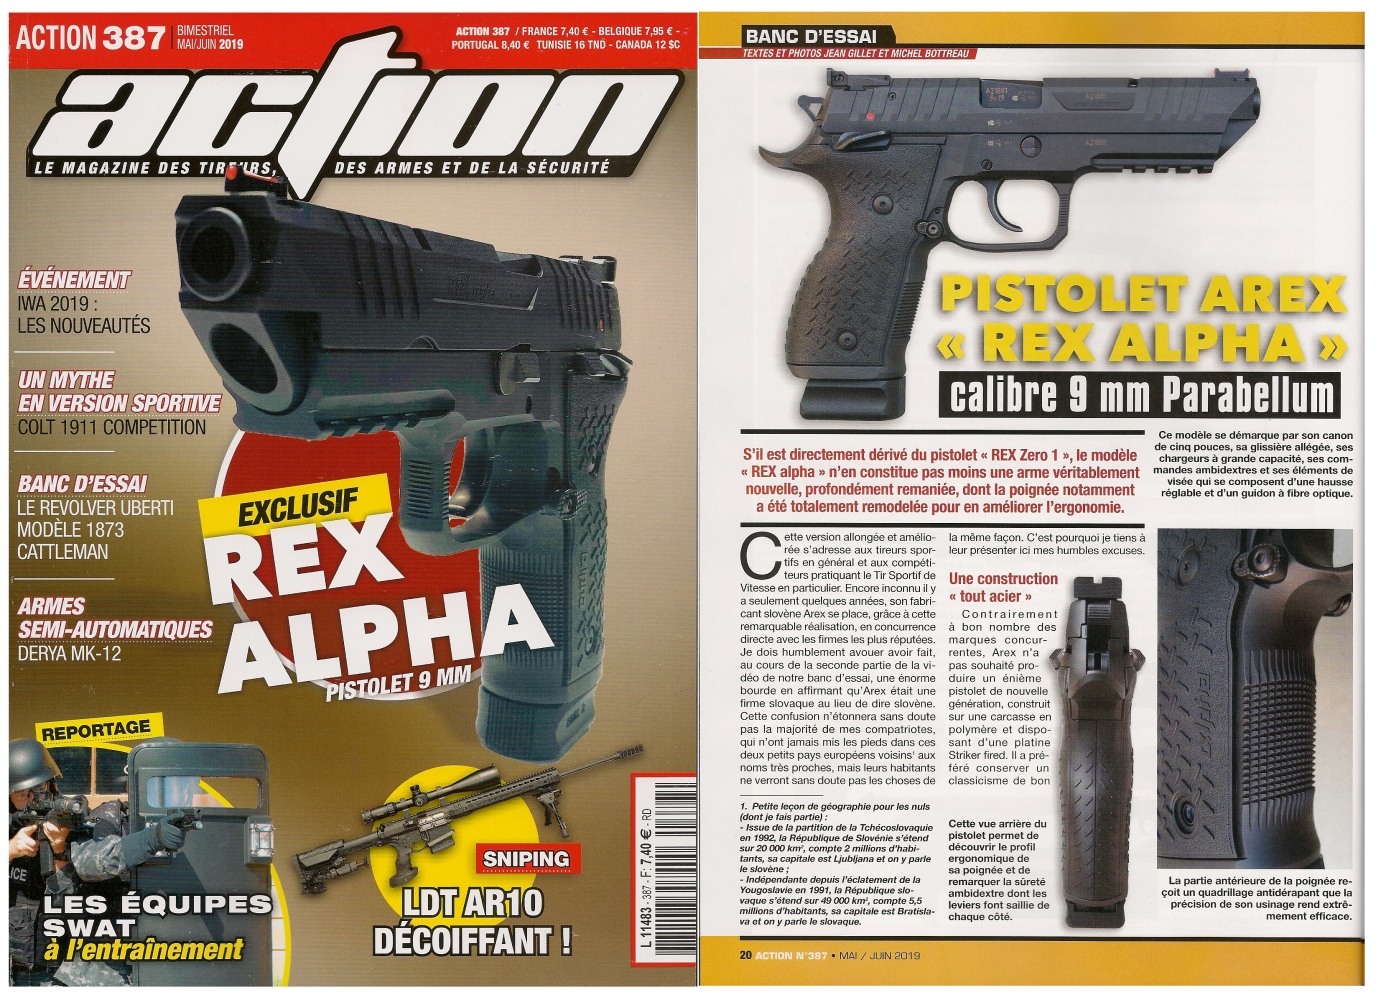 Le banc d’essai du pistolet Arex REX alpha a été publié sur 6 pages dans le magazine Action n°387 (mai/juin 2019).